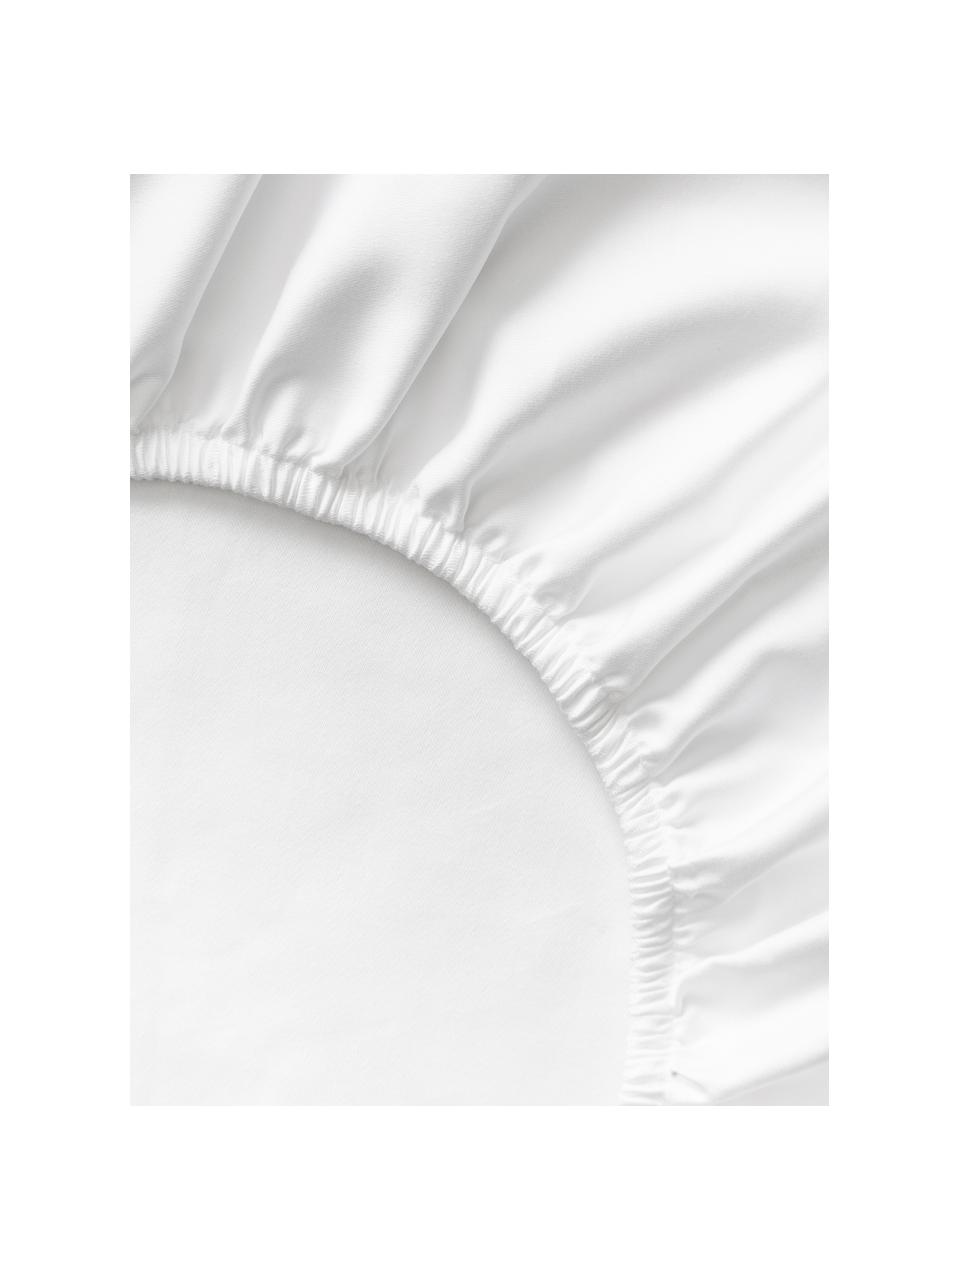 Sábana bajera de satén Premium, Blanco, Cama 90 cm (90 x 200 x 25 cm)